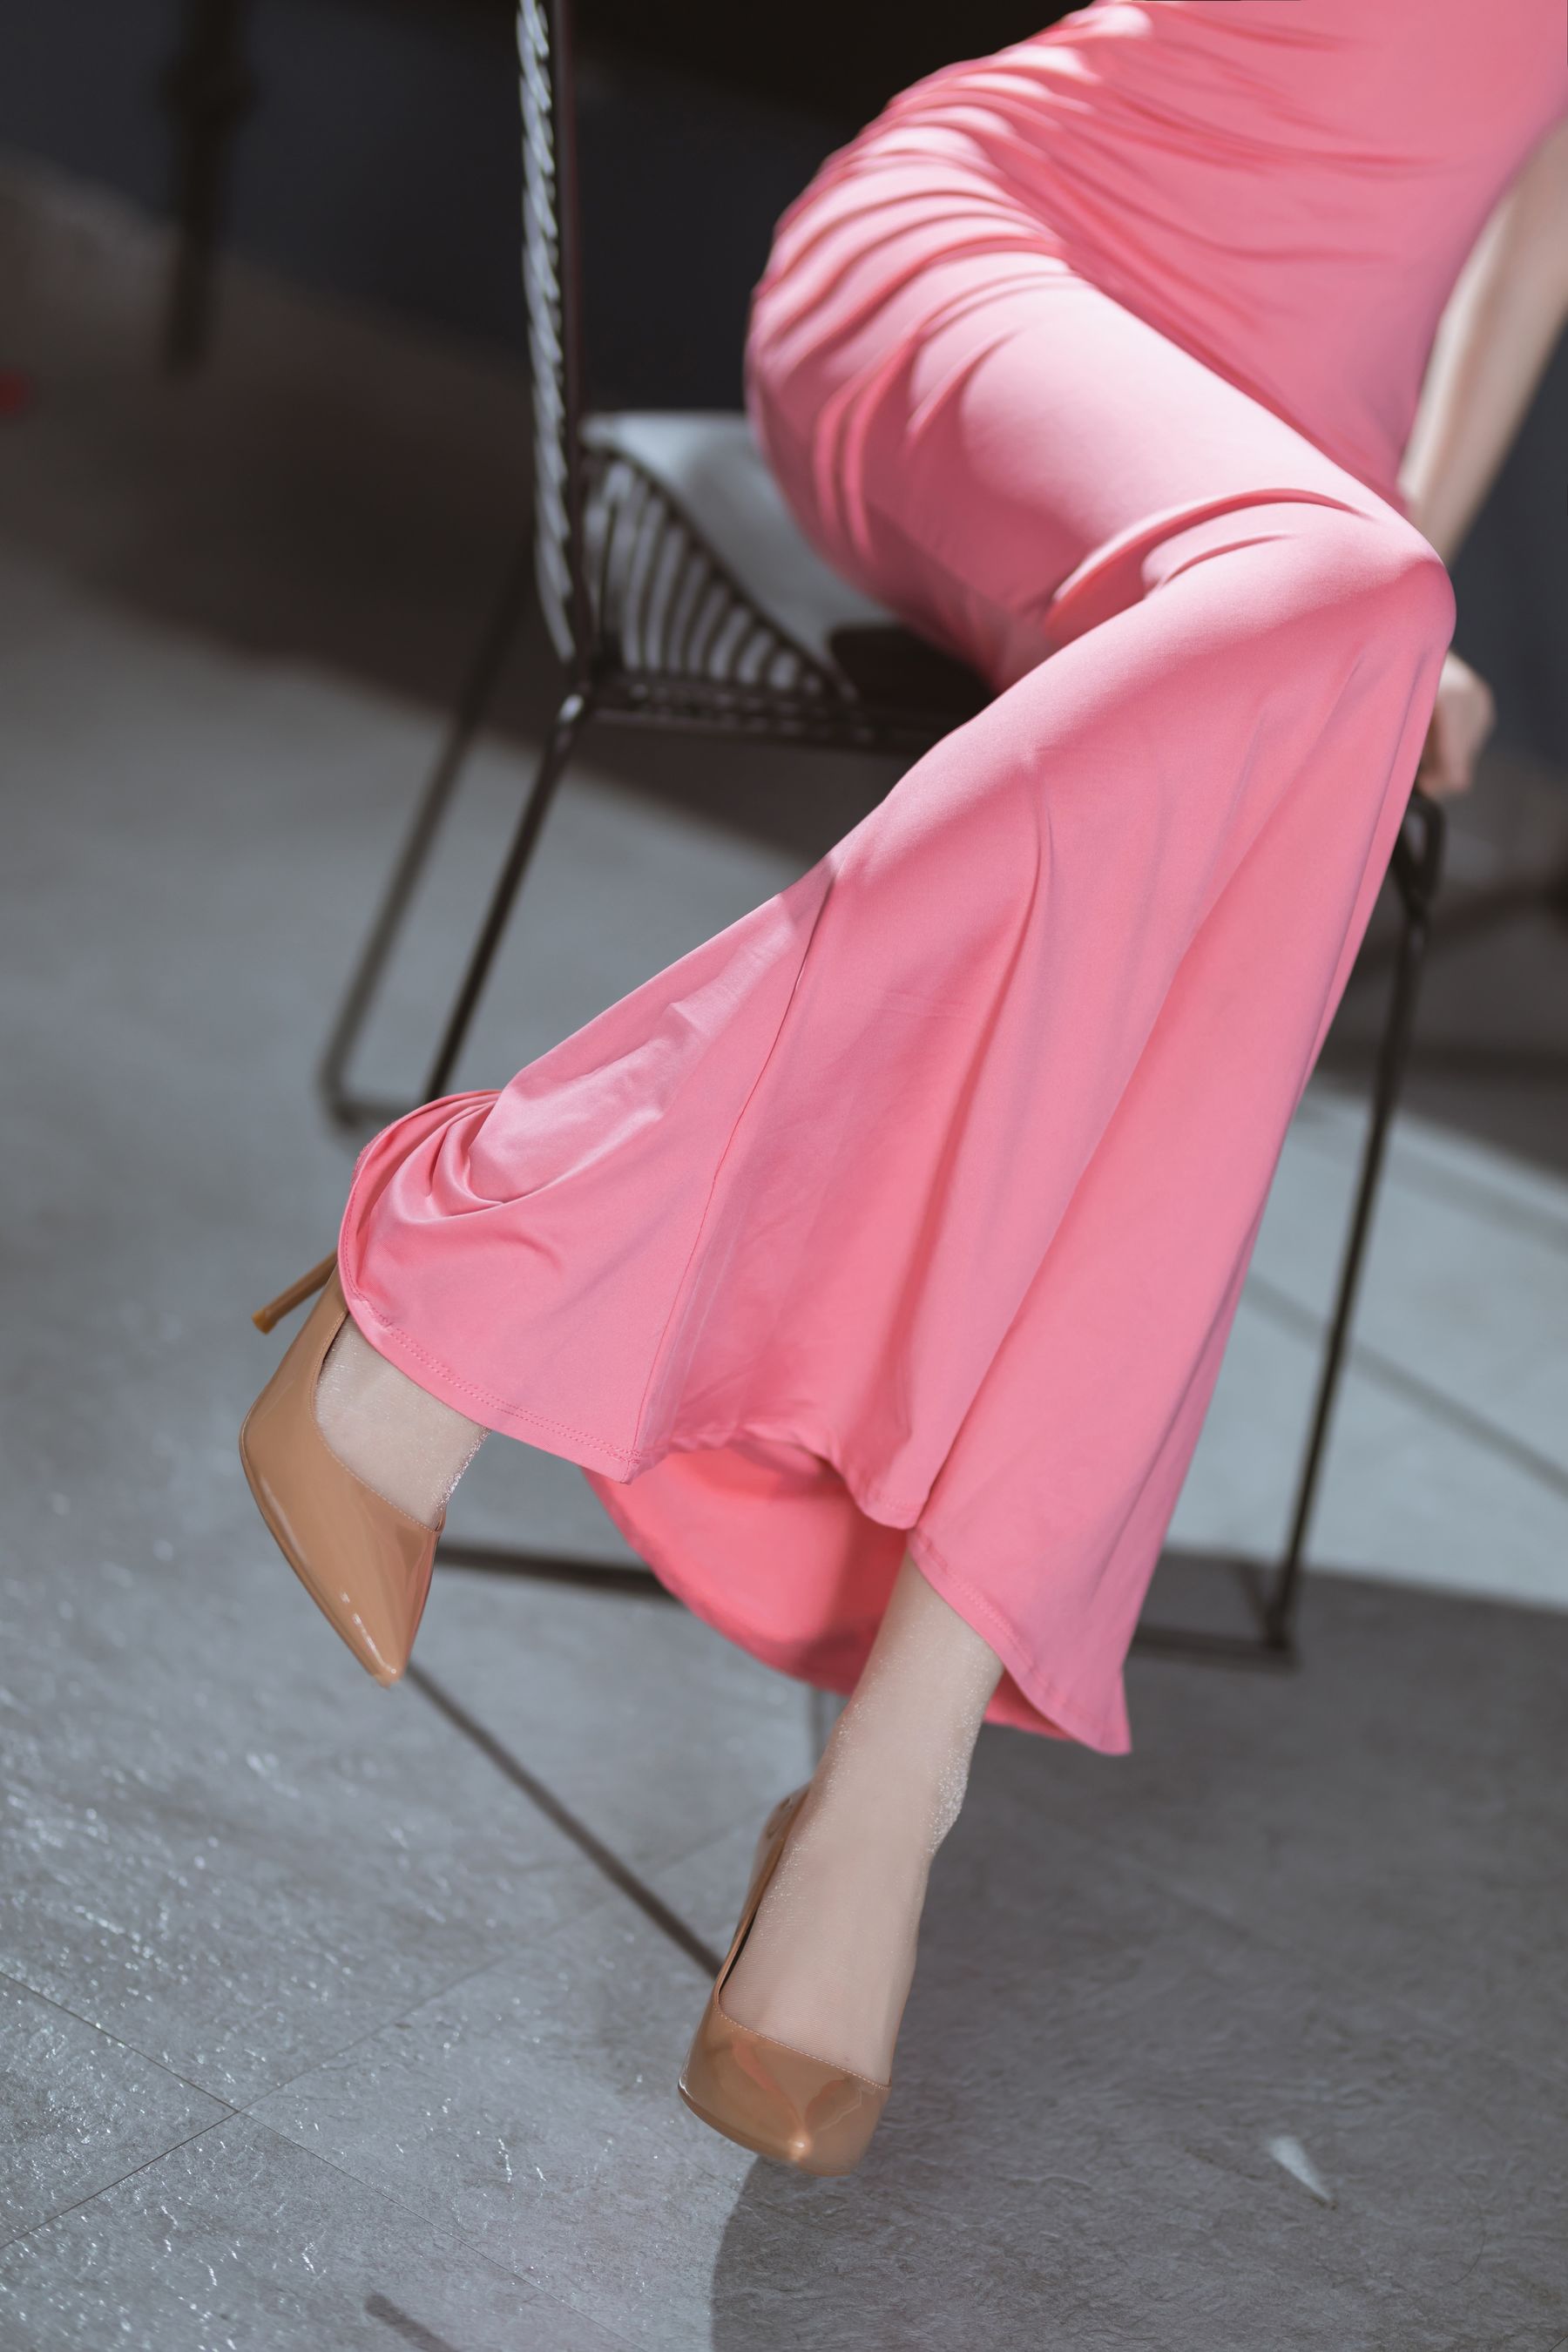 许岚 - 粉色长裙